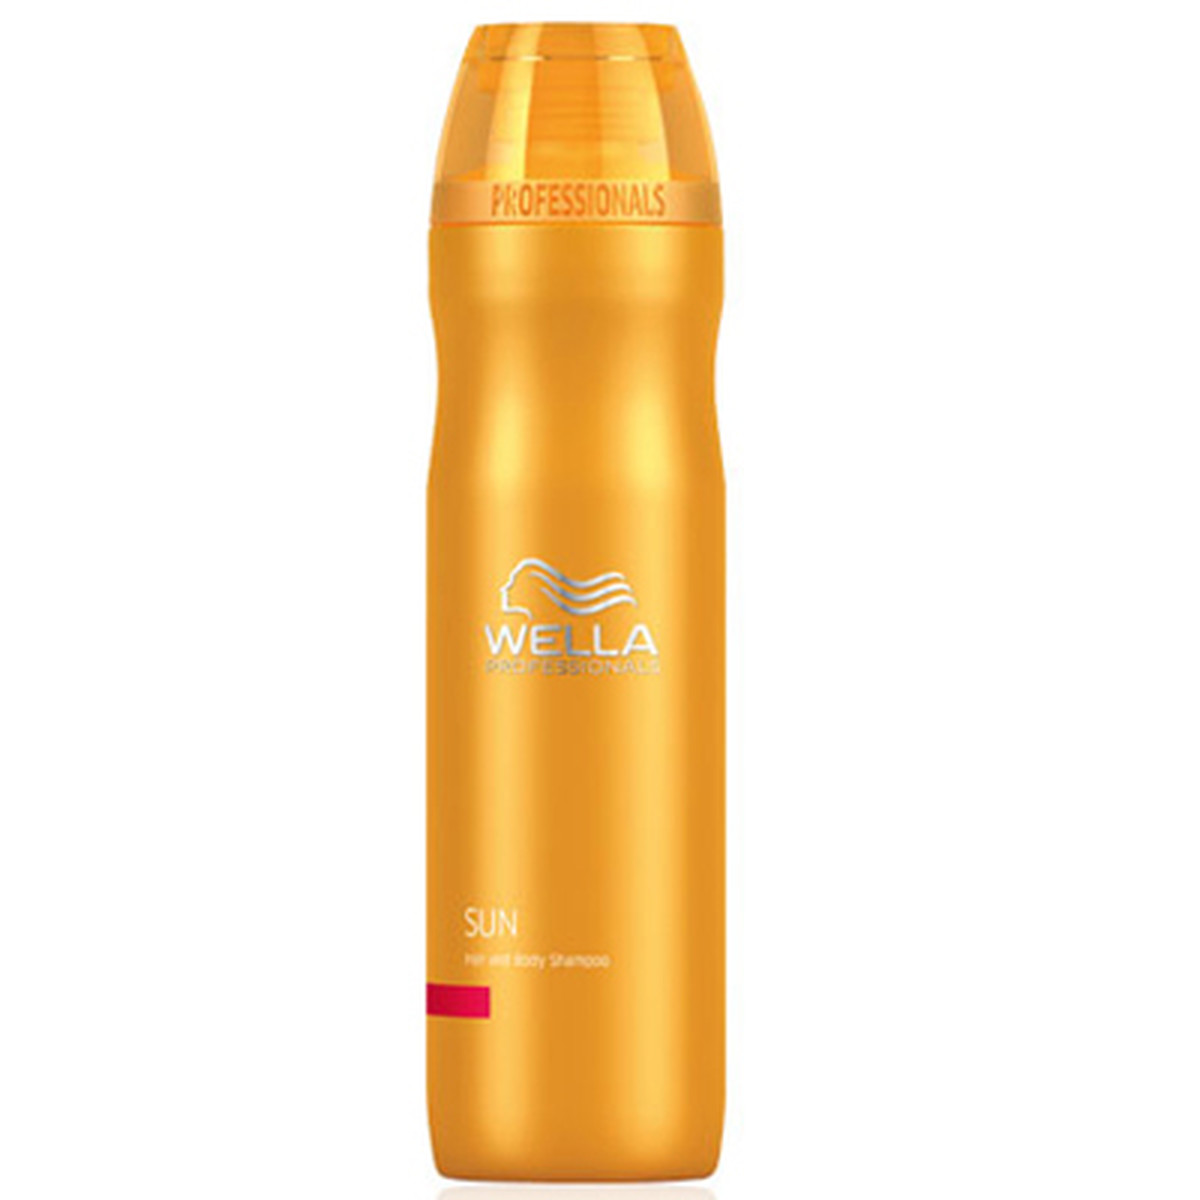 Sun Shampoo 250Ml » Solar Protection » » Hair »...